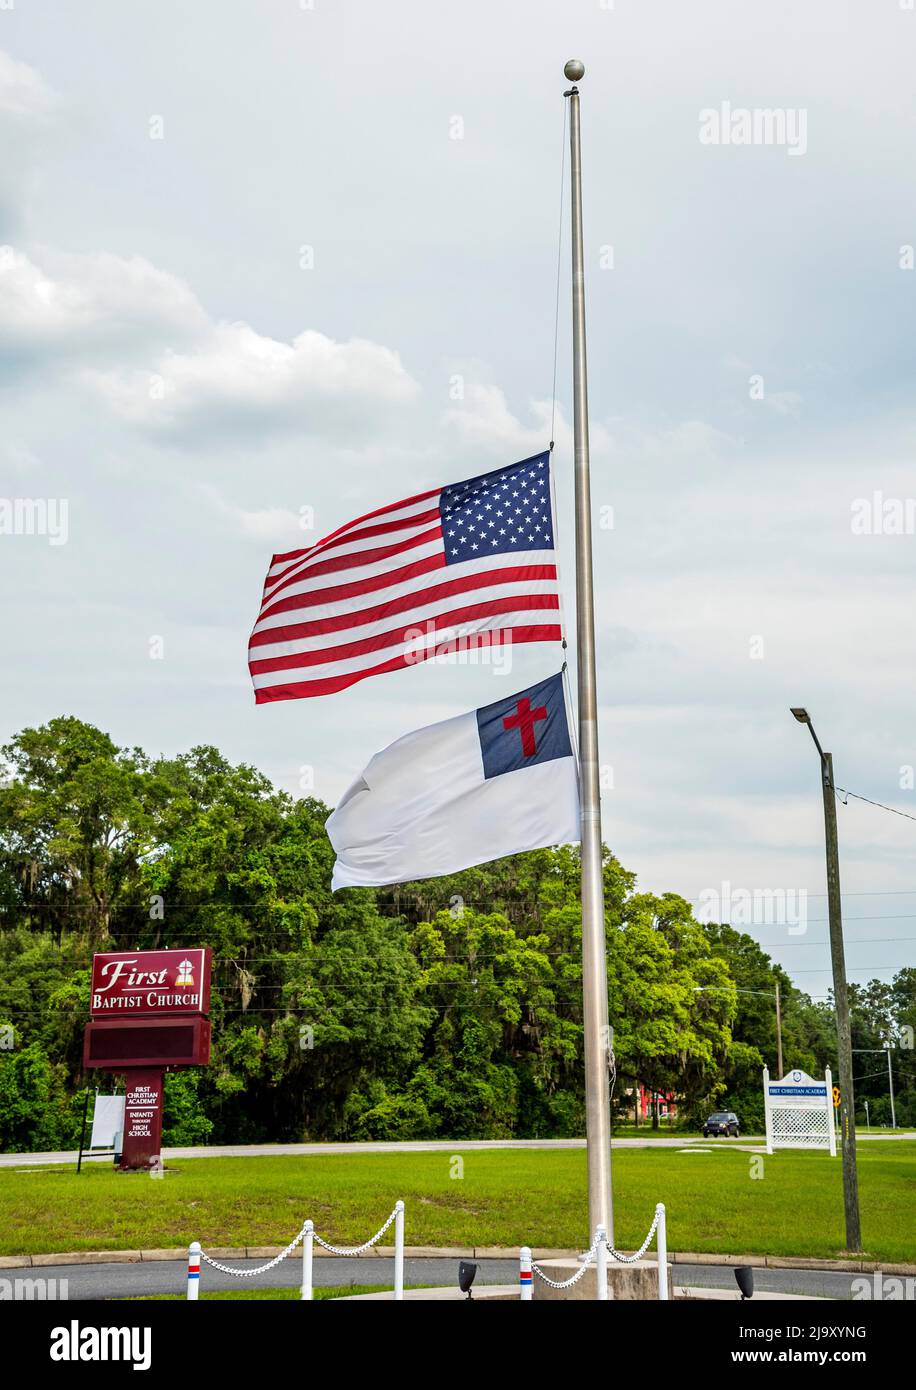 Die amerikanische Flagge der Baptist Church wird in Florida am Halbmast zu Ehren des Massakers der Grundschule in Uvalde, Texas, auf dem Robb Elementary, geflogen Stockfoto